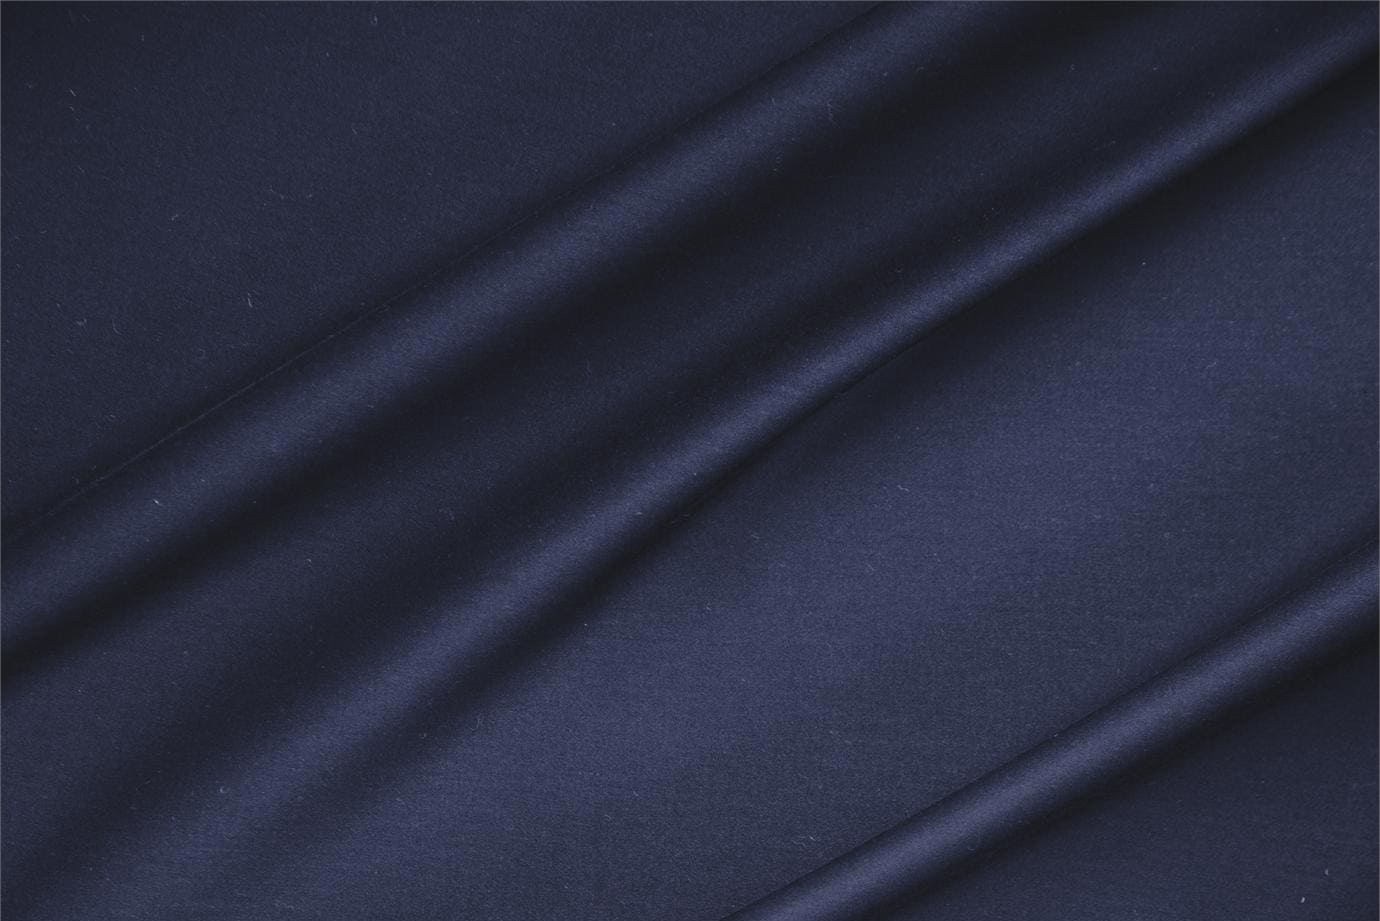 Tessuto Rasatello di Cotone Stretch Blu Denim in Cotone, Stretch per abbigliamento